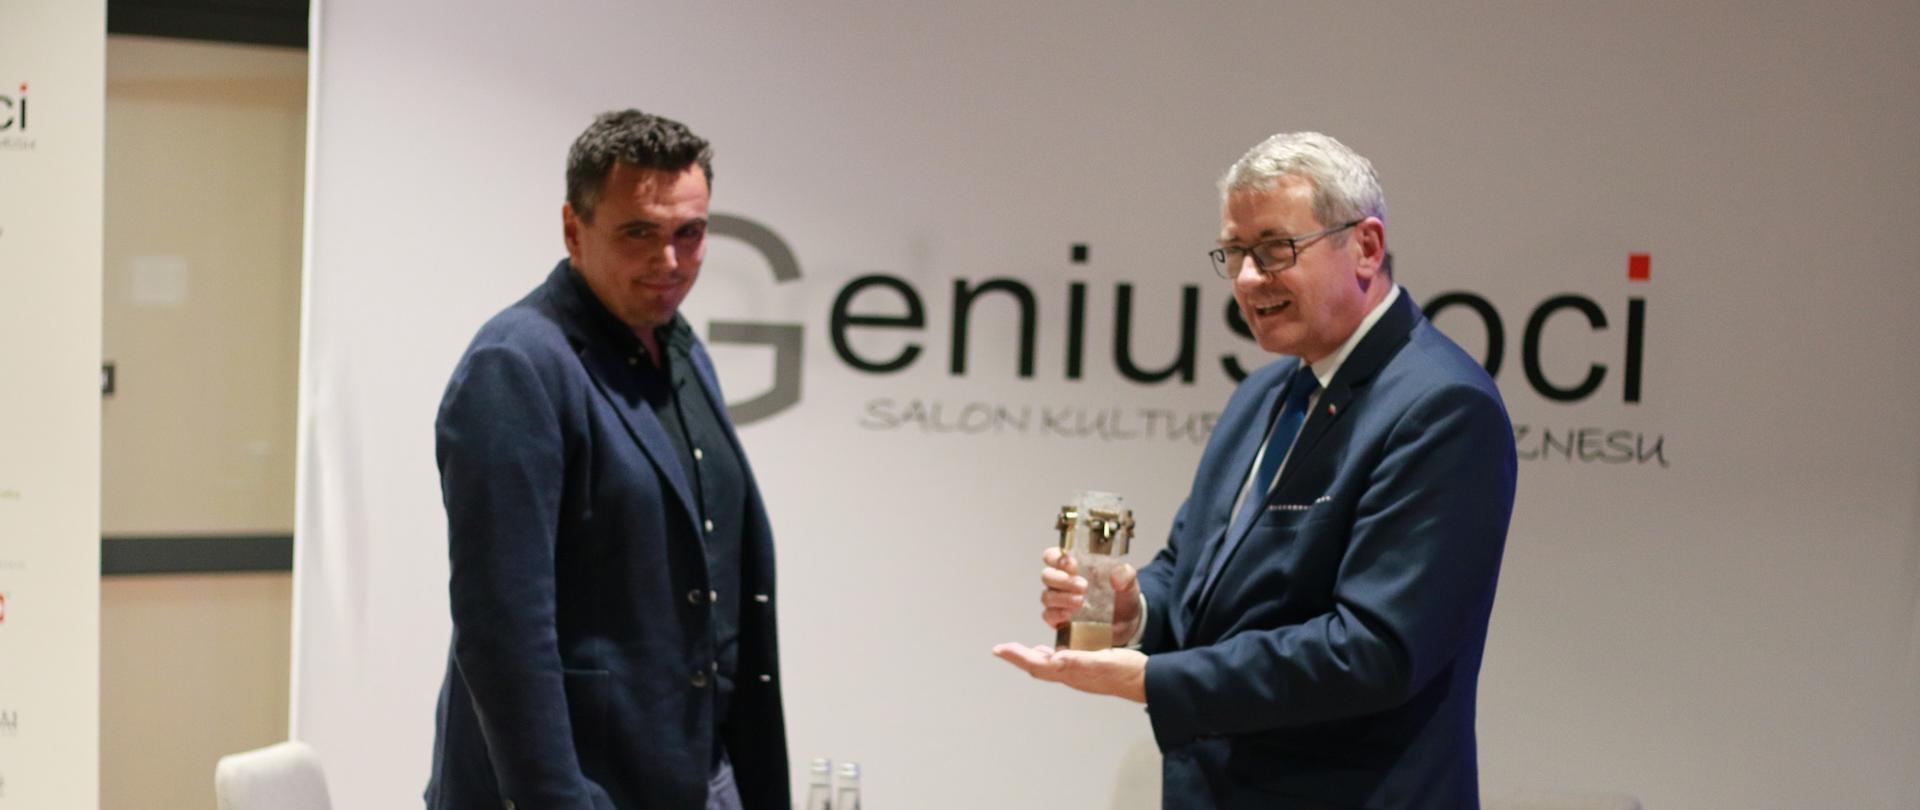 Minister Murdzek wręcza nagrodę - statuetkę, w tle ściana z napisem Genius Loci.